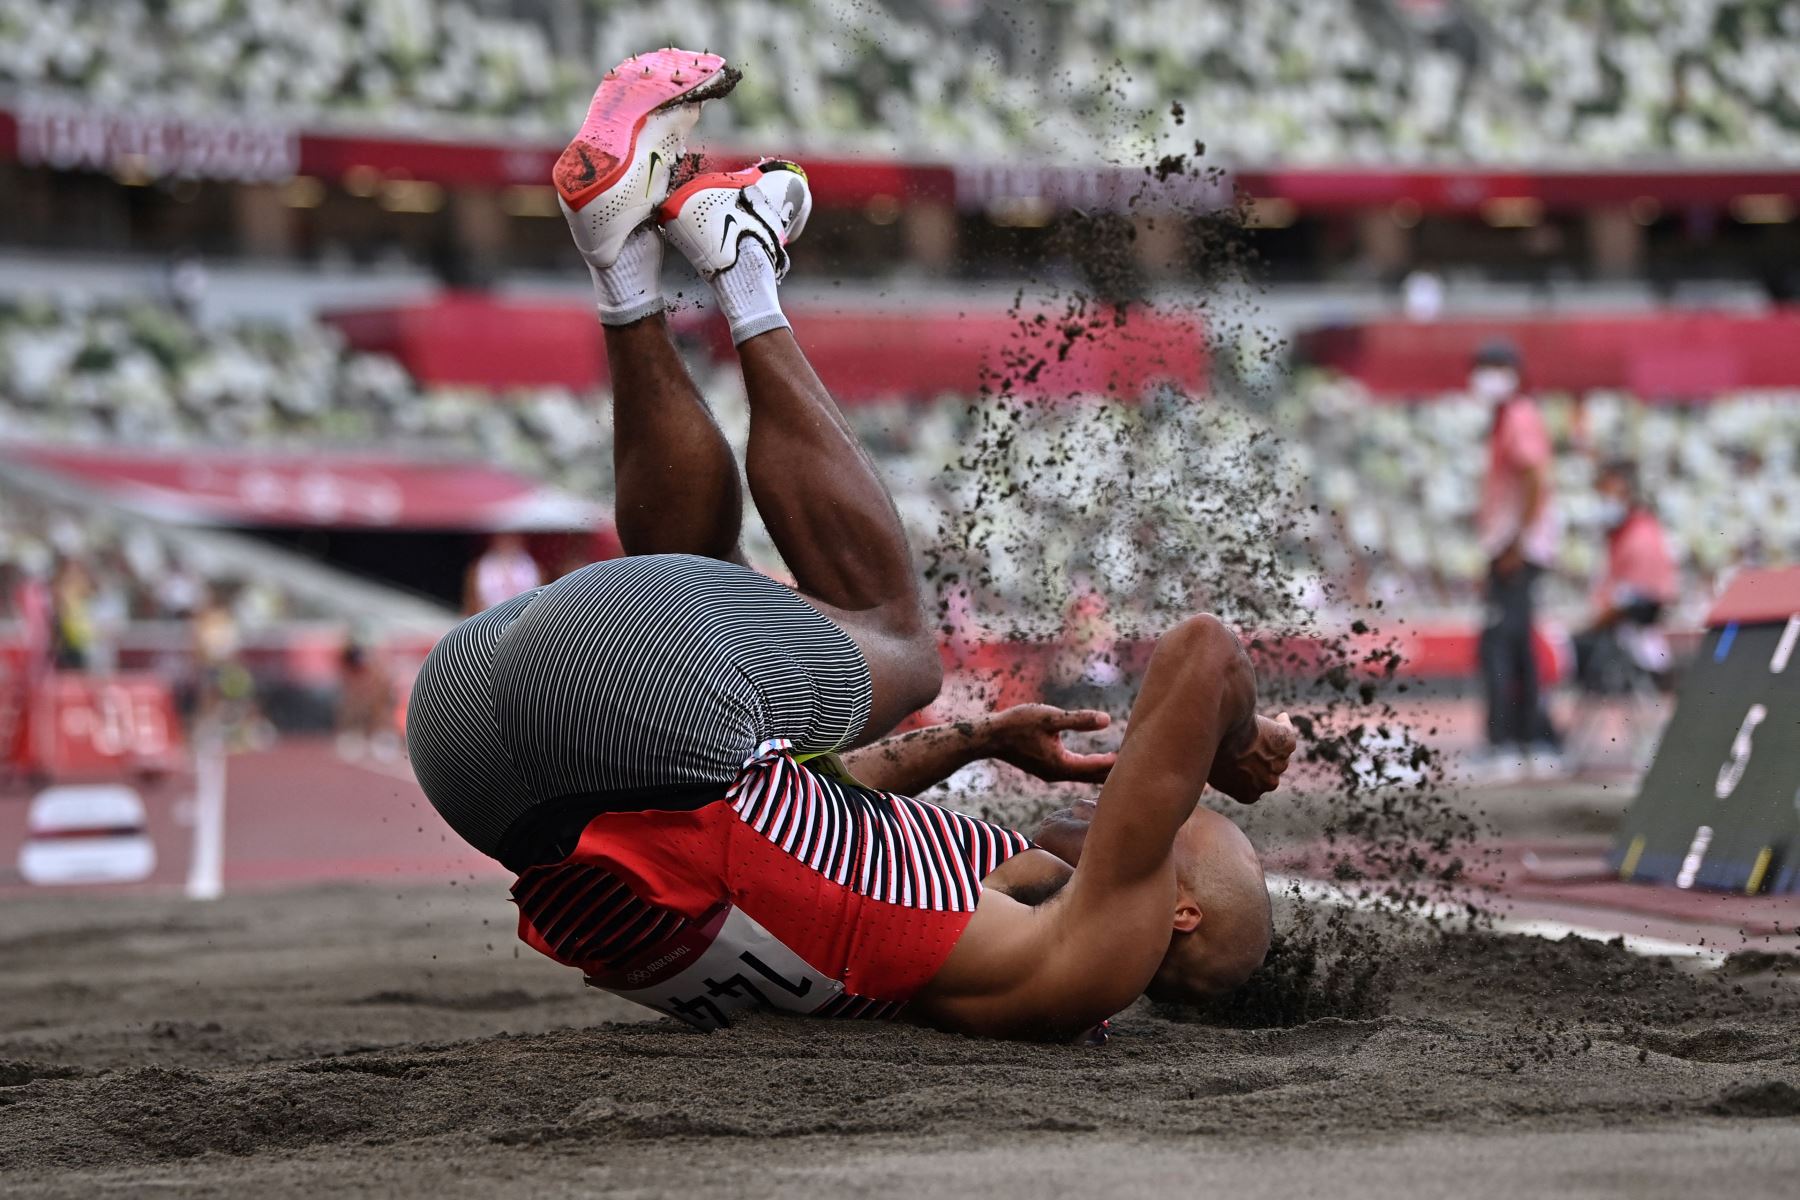 El canadiense Damian Warner compite en el salto de longitud de decatlón masculino durante los Juegos Olímpicos de Tokio 2020.
Foto: AFP